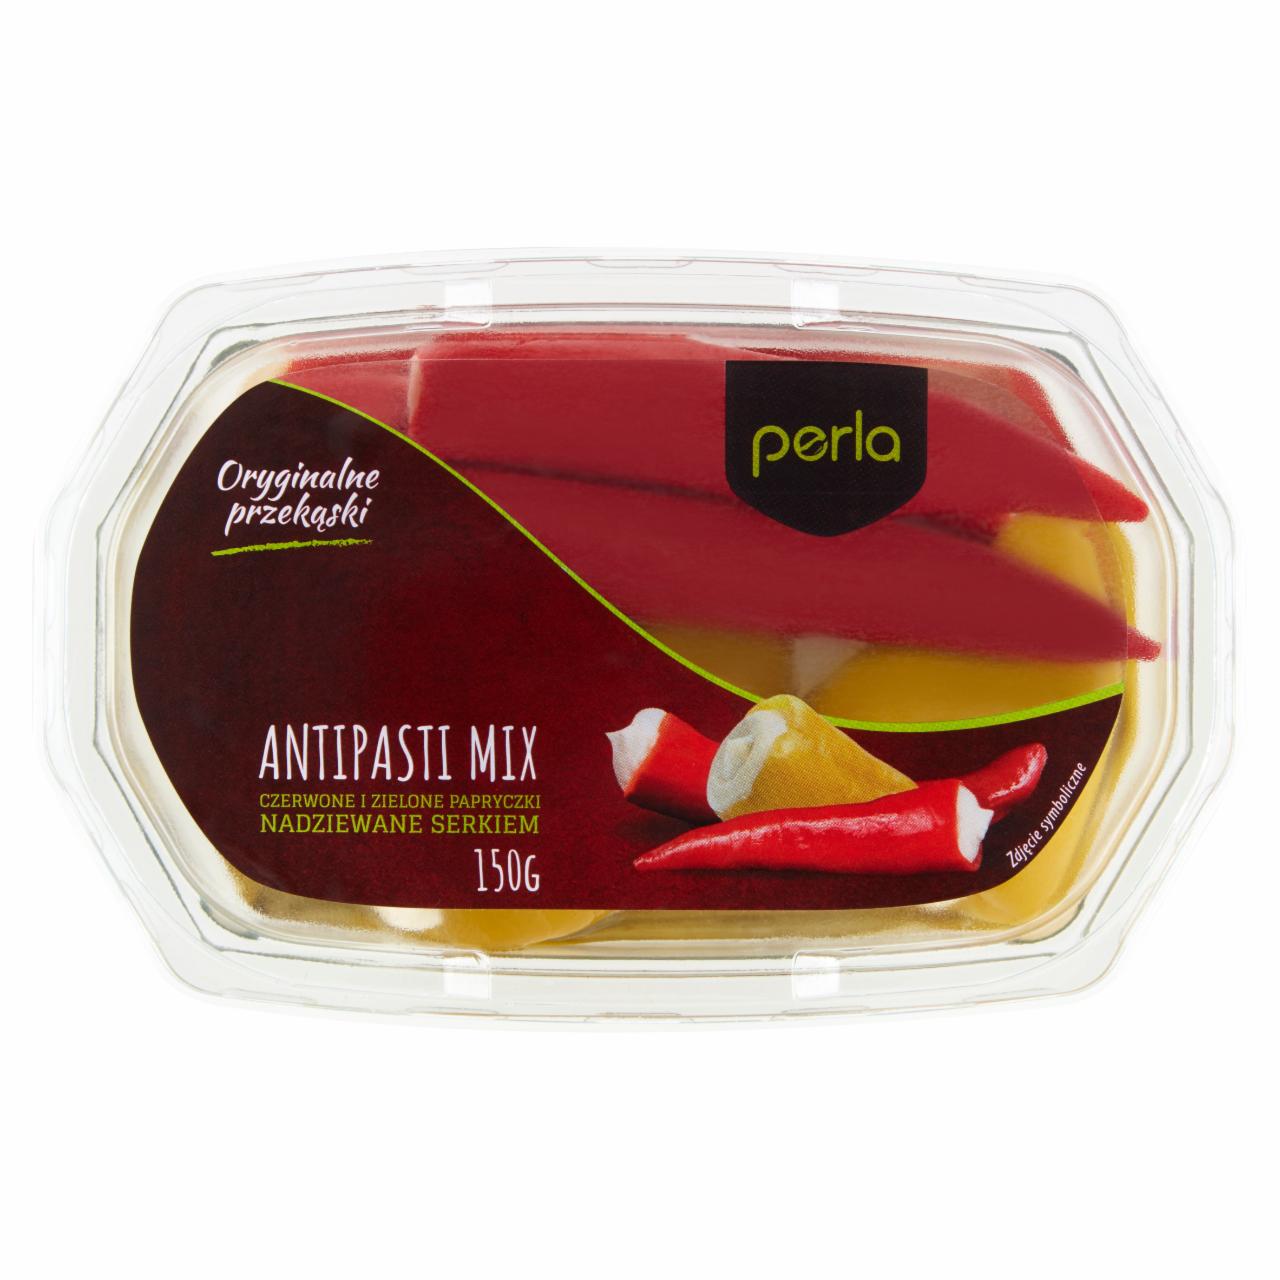 Zdjęcia - Perla Antipasti Mix Czerwone i zielone papryczki nadziewane serkiem 150 g